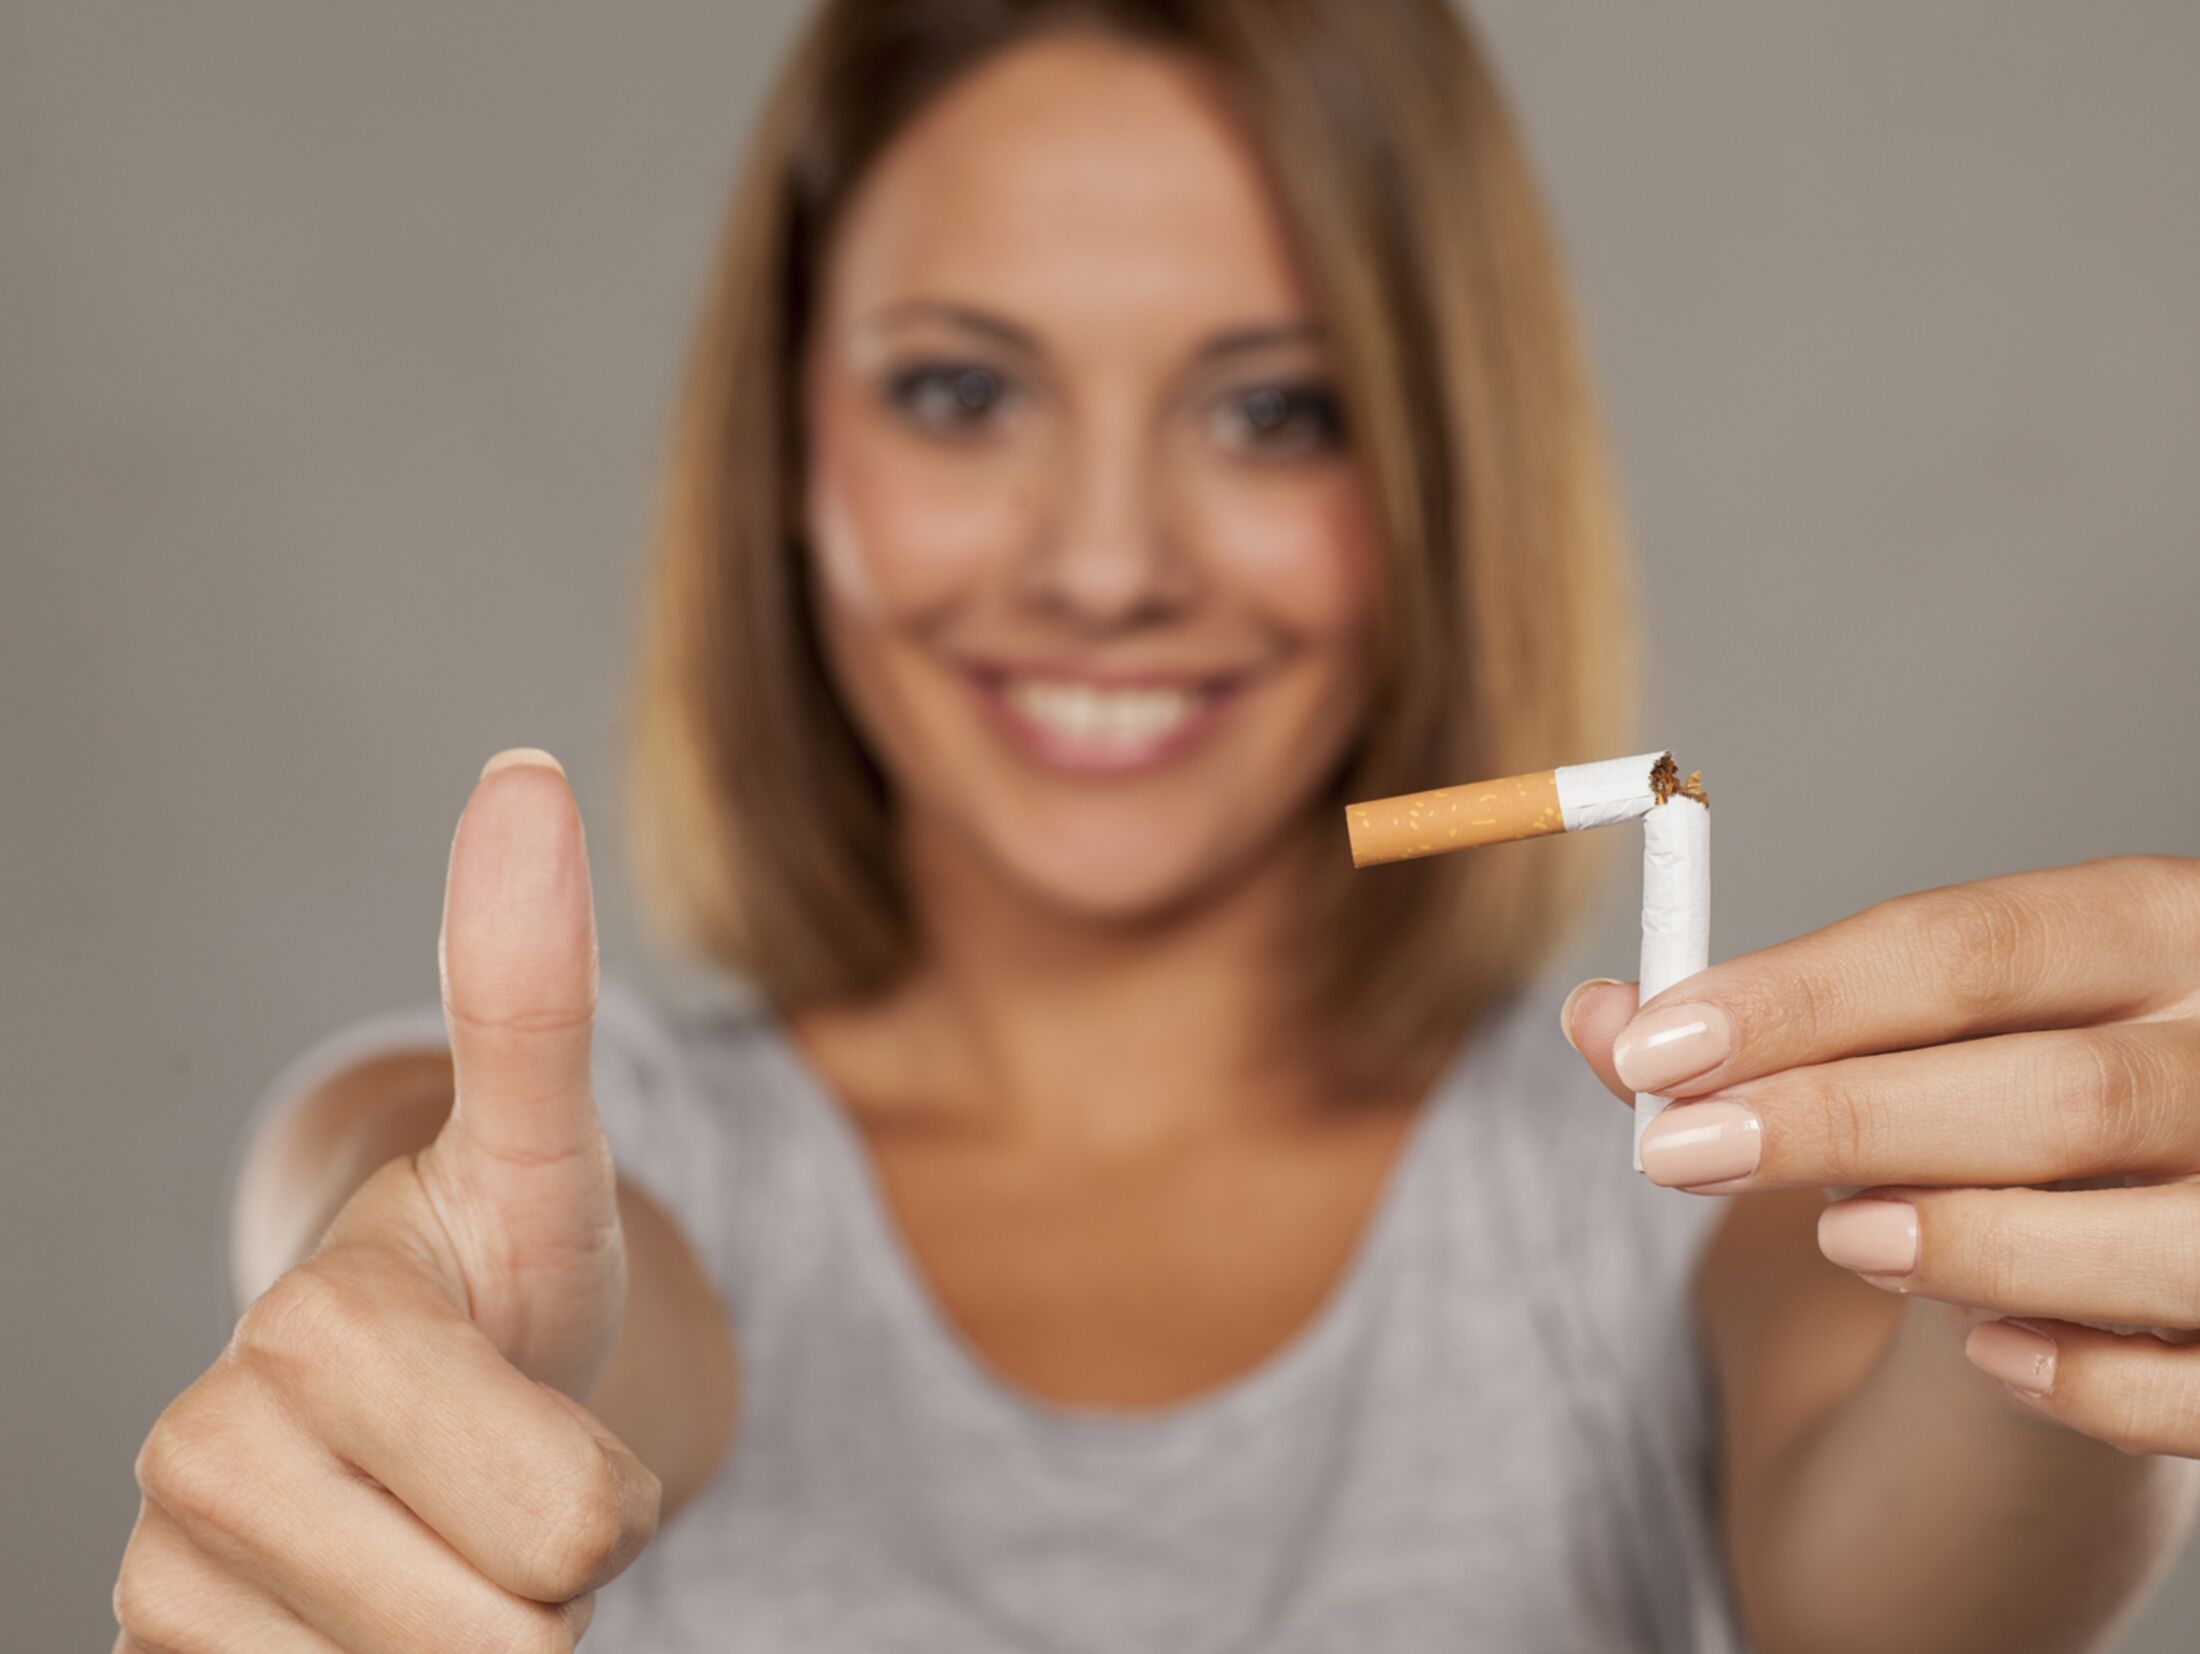 https://imgr1.womenshealth.de/Viele-gesundheitlichen-Folgen-des-Rauchens-lassen-sich-mit-dem-Aufhoeren-wieder-ausbuegeln--jsonLd4x3-867d7a48-119690.jpg